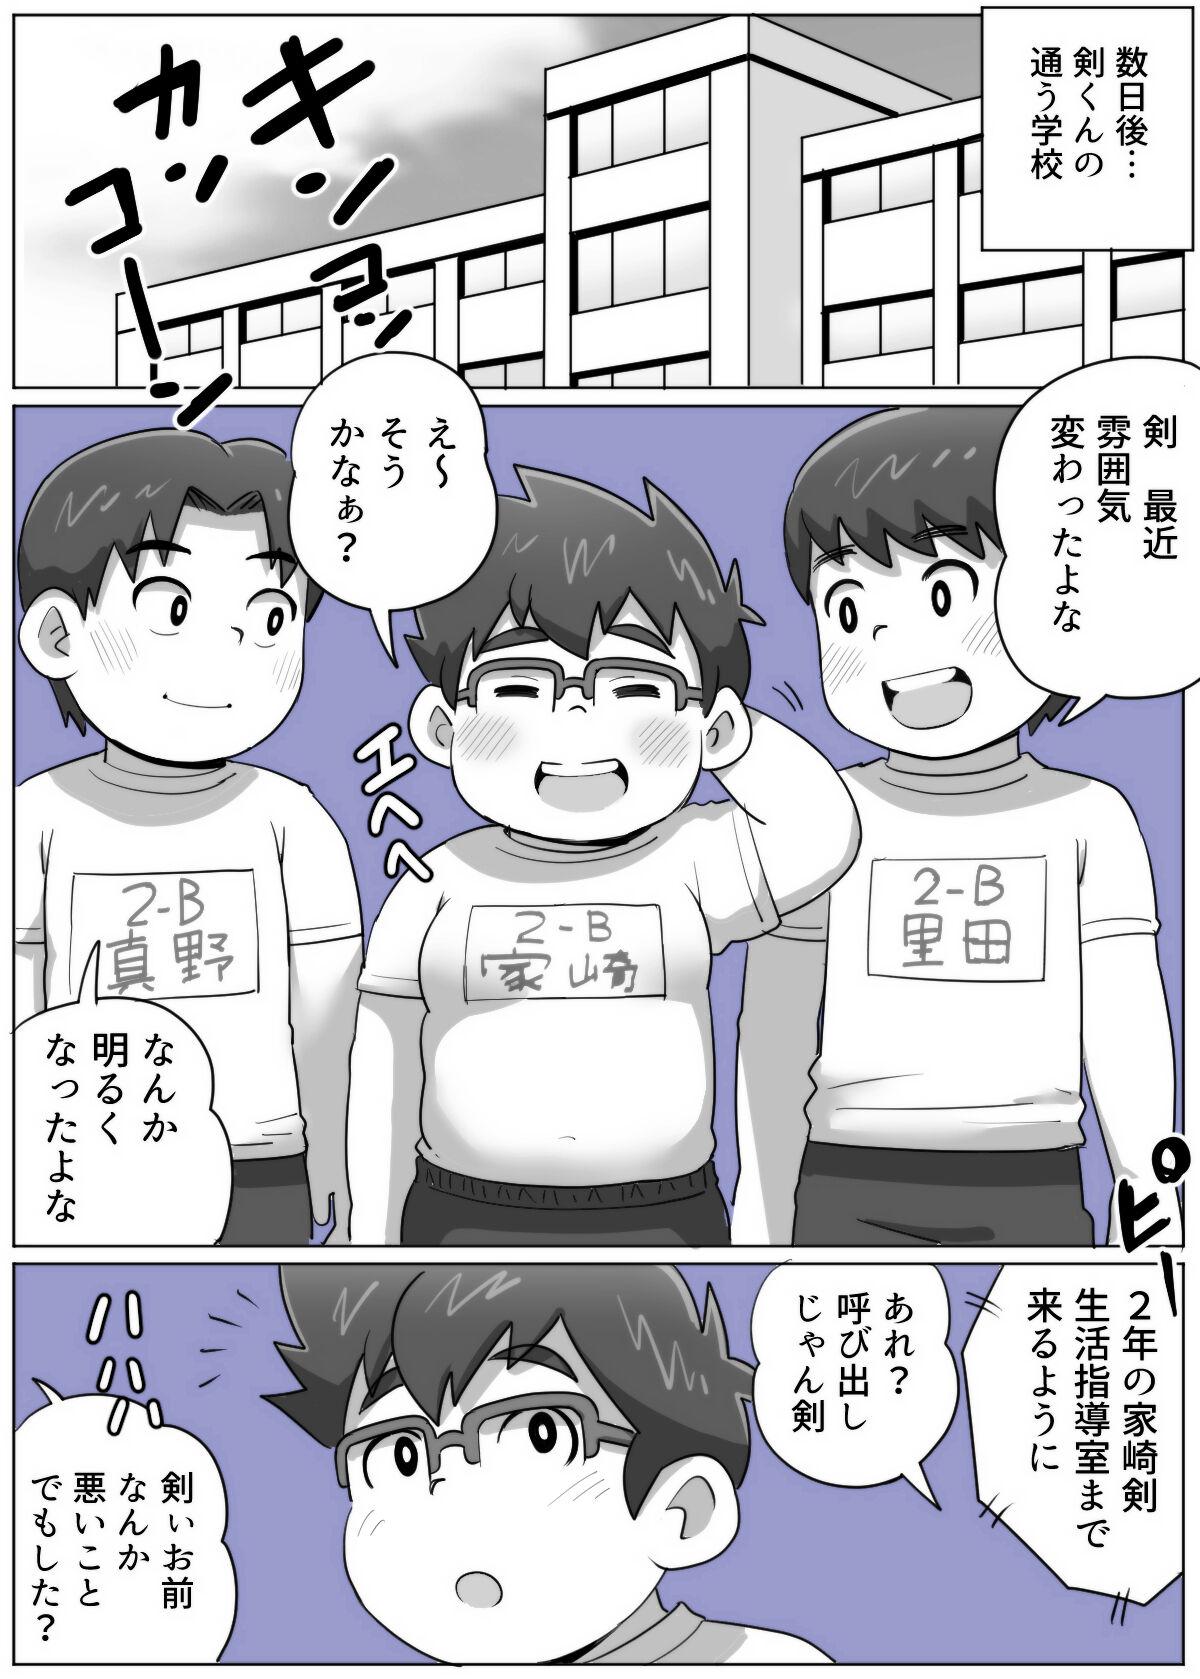 obeccho - 短編漫画「施術にようこそ！剣くん編」 68